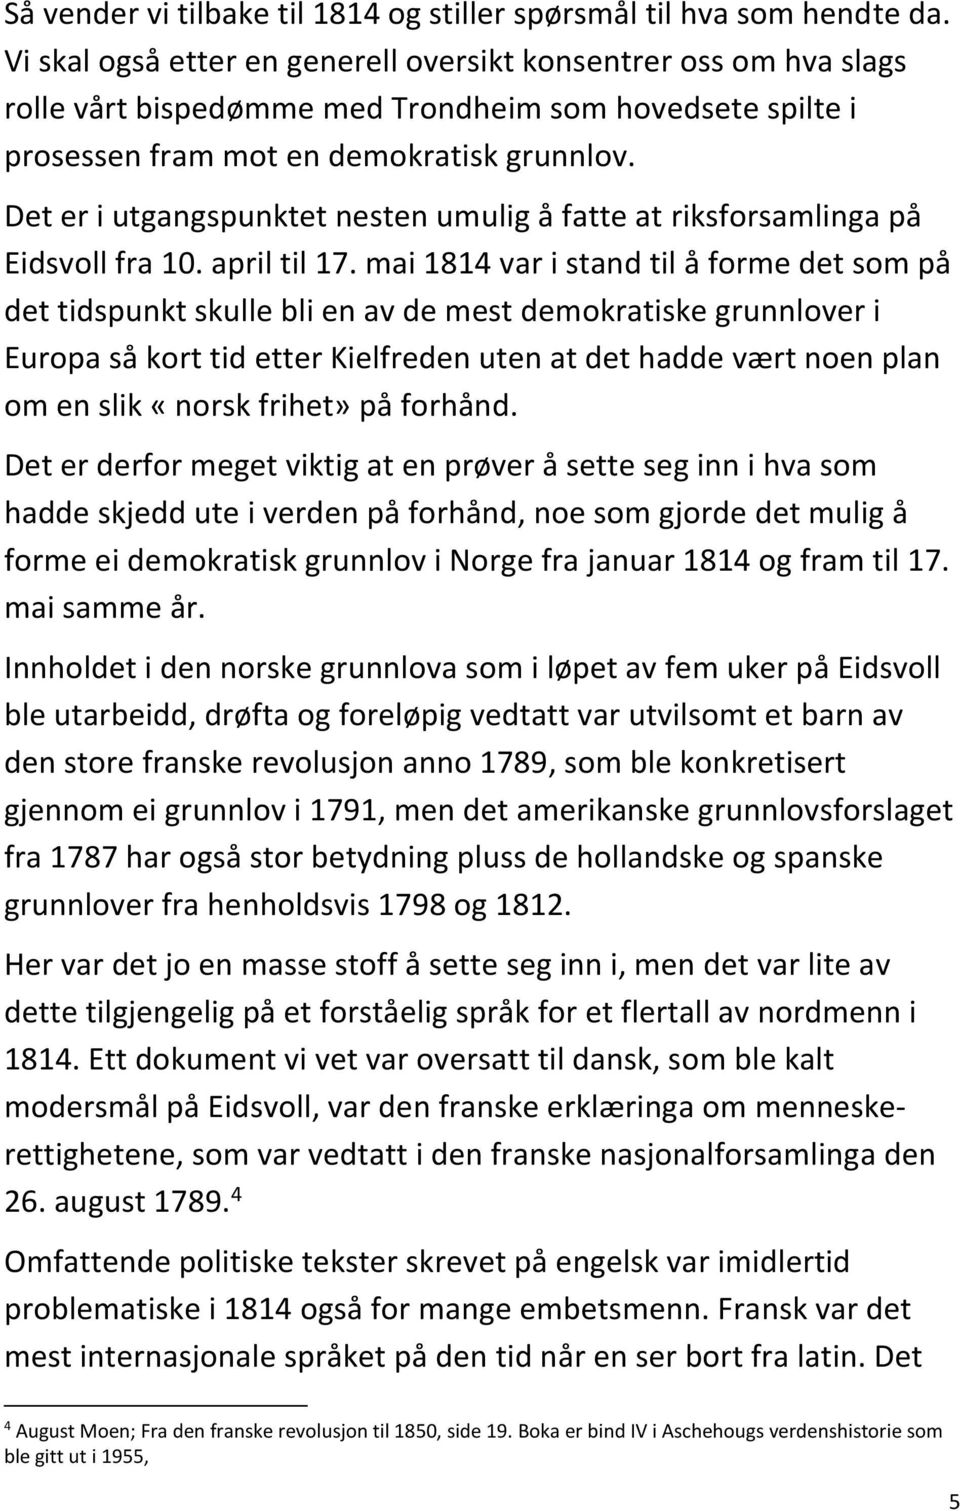 Det er i utgangspunktet nesten umulig å fatte at riksforsamlinga på Eidsvoll fra 10. april til 17.